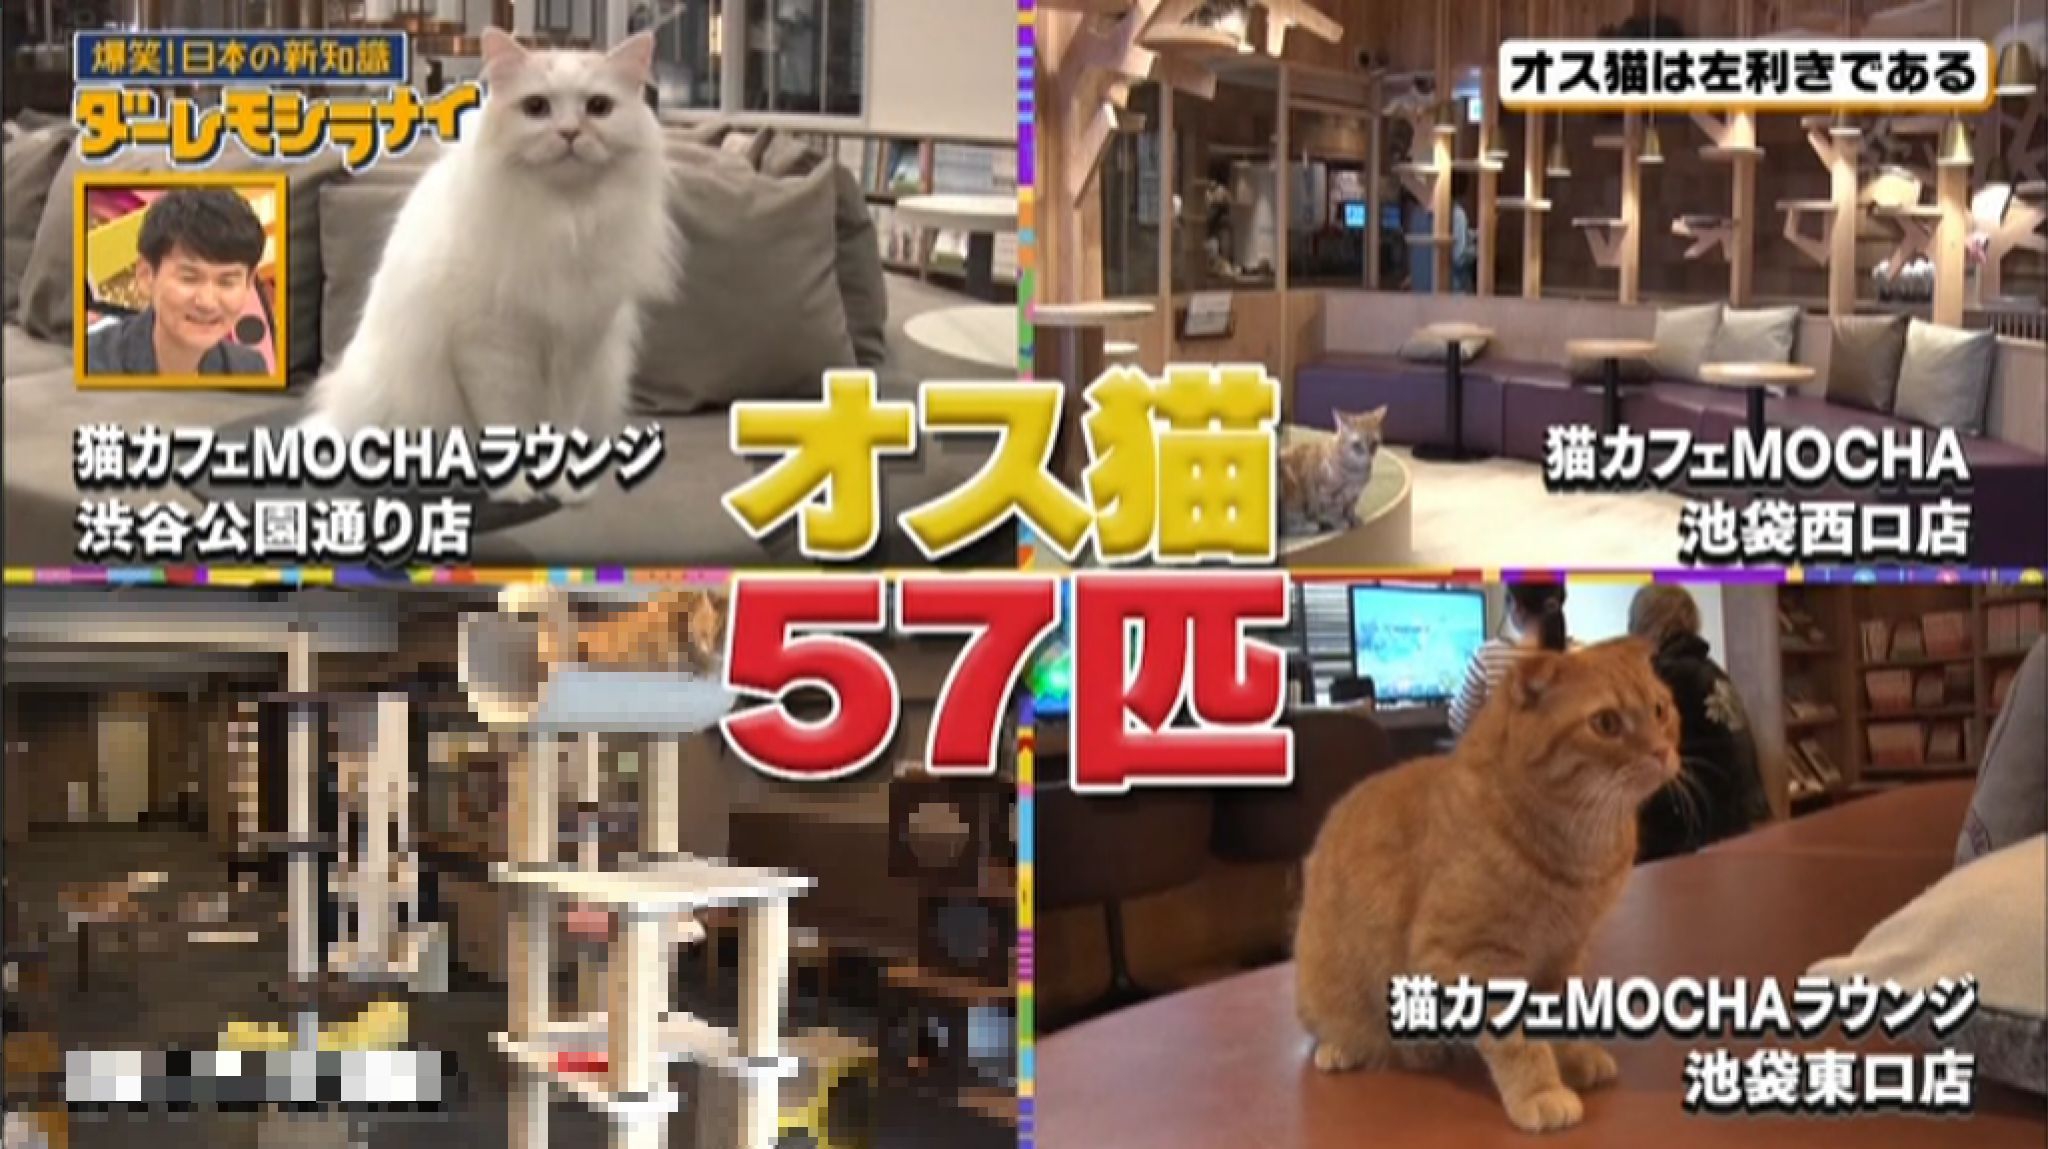 猫カフェmocha3店舗がmbs毎日放送 ダーレモシラナイ に紹介されました 猫カフェモカ お知らせ メディア掲載情報